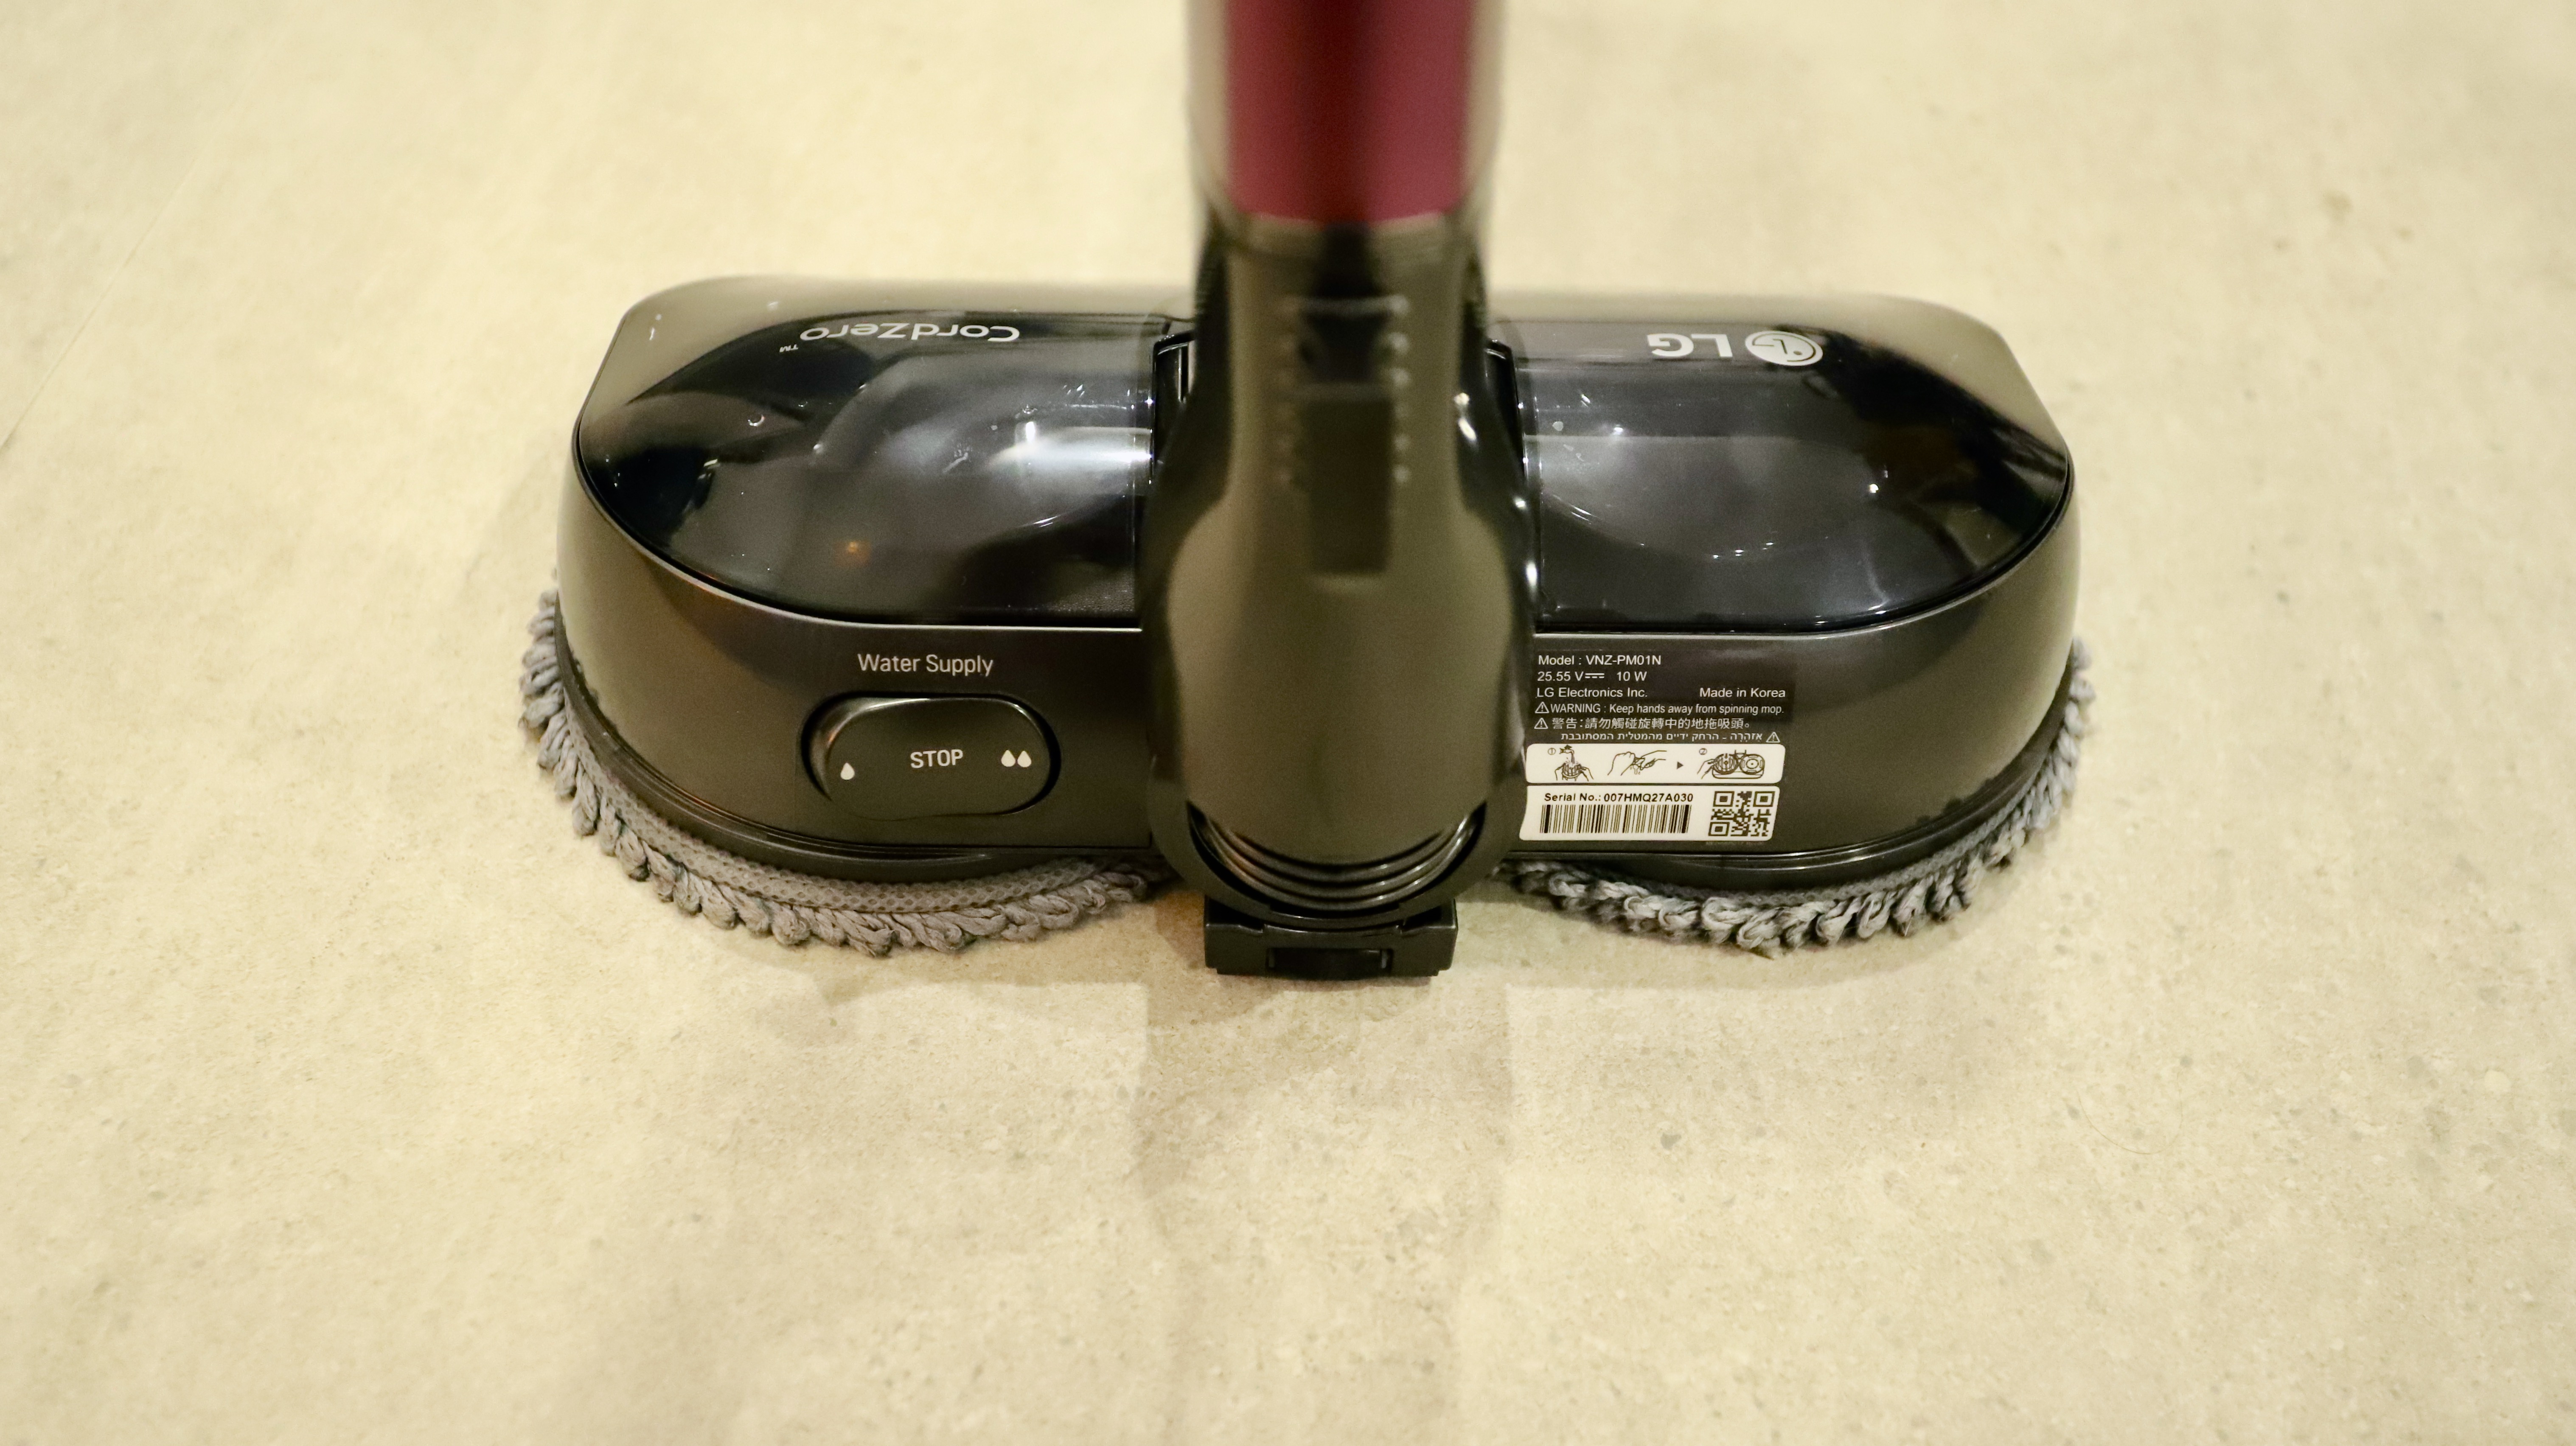 LG CordZero A9 Kompressor handstick vacuum mop